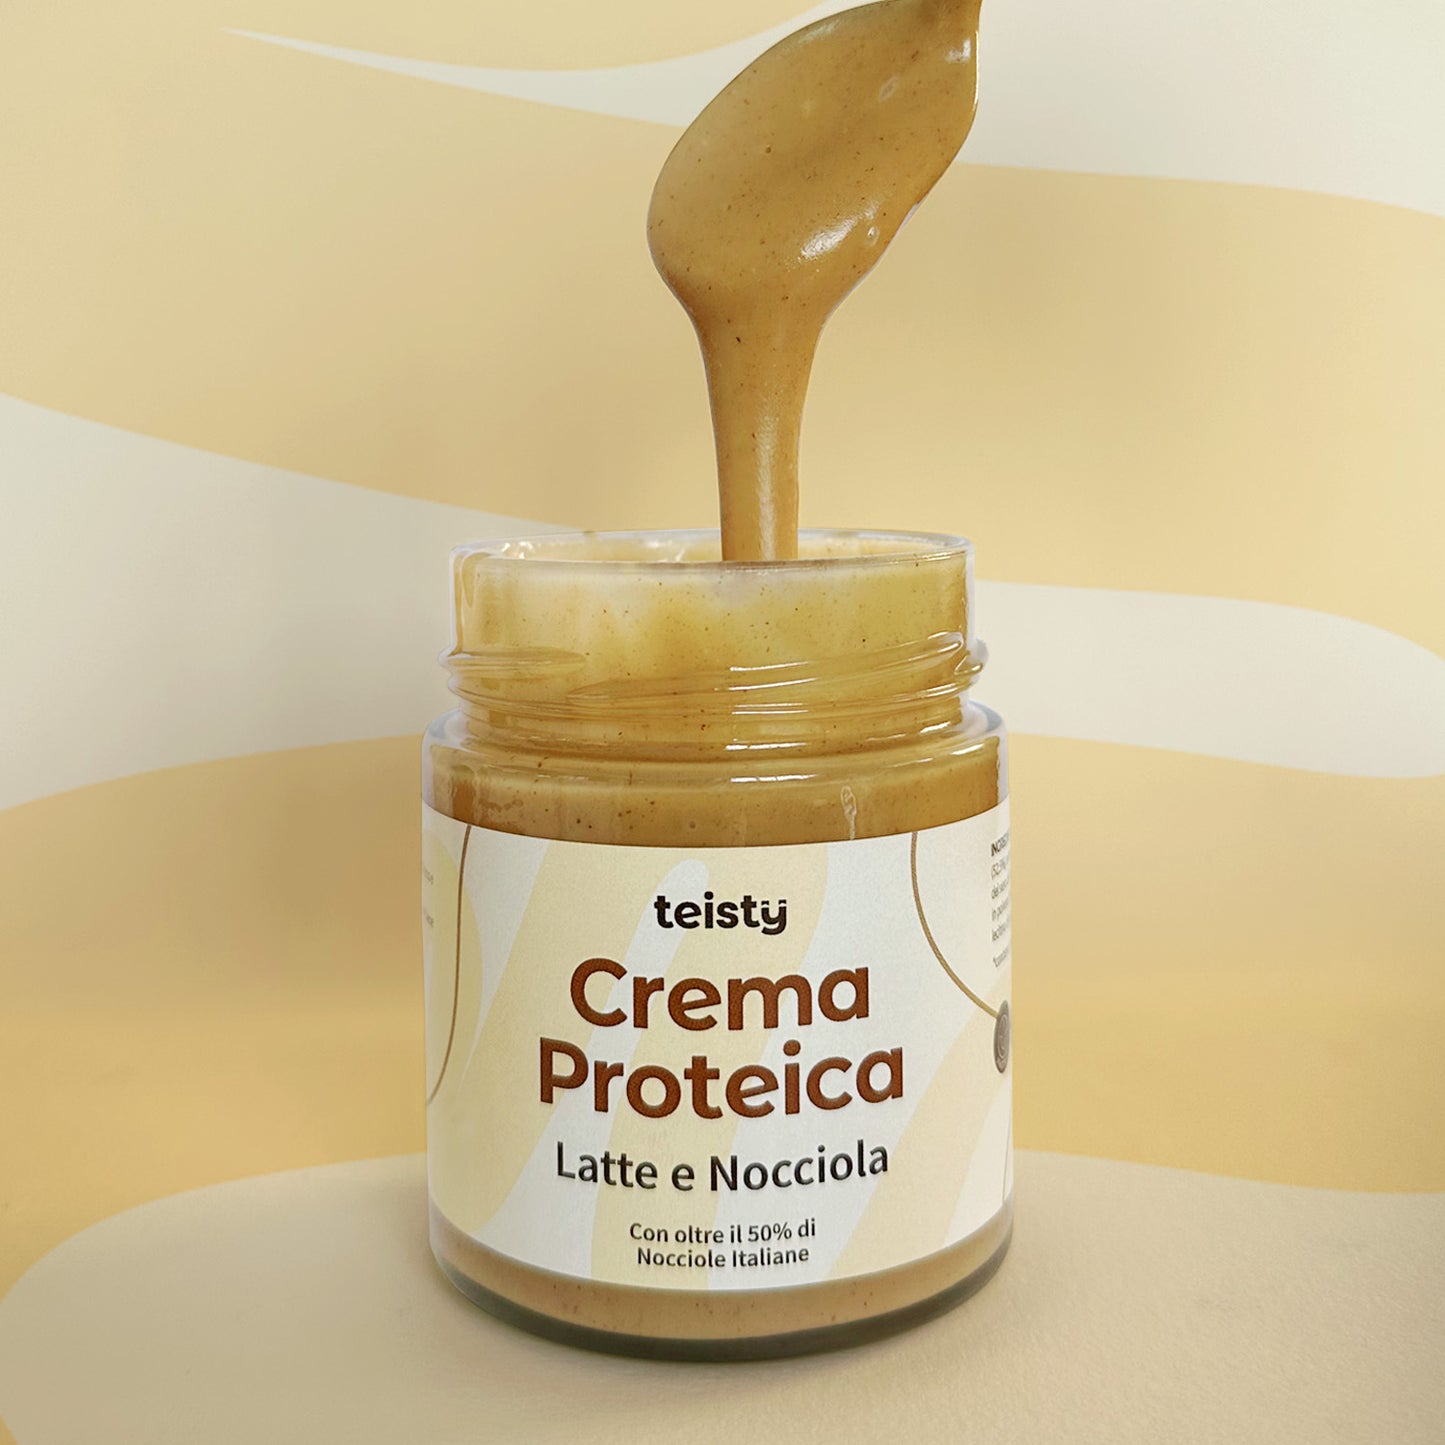 Crema Proteica - Latte e Nocciola - la nuova Wafer e Nocciola